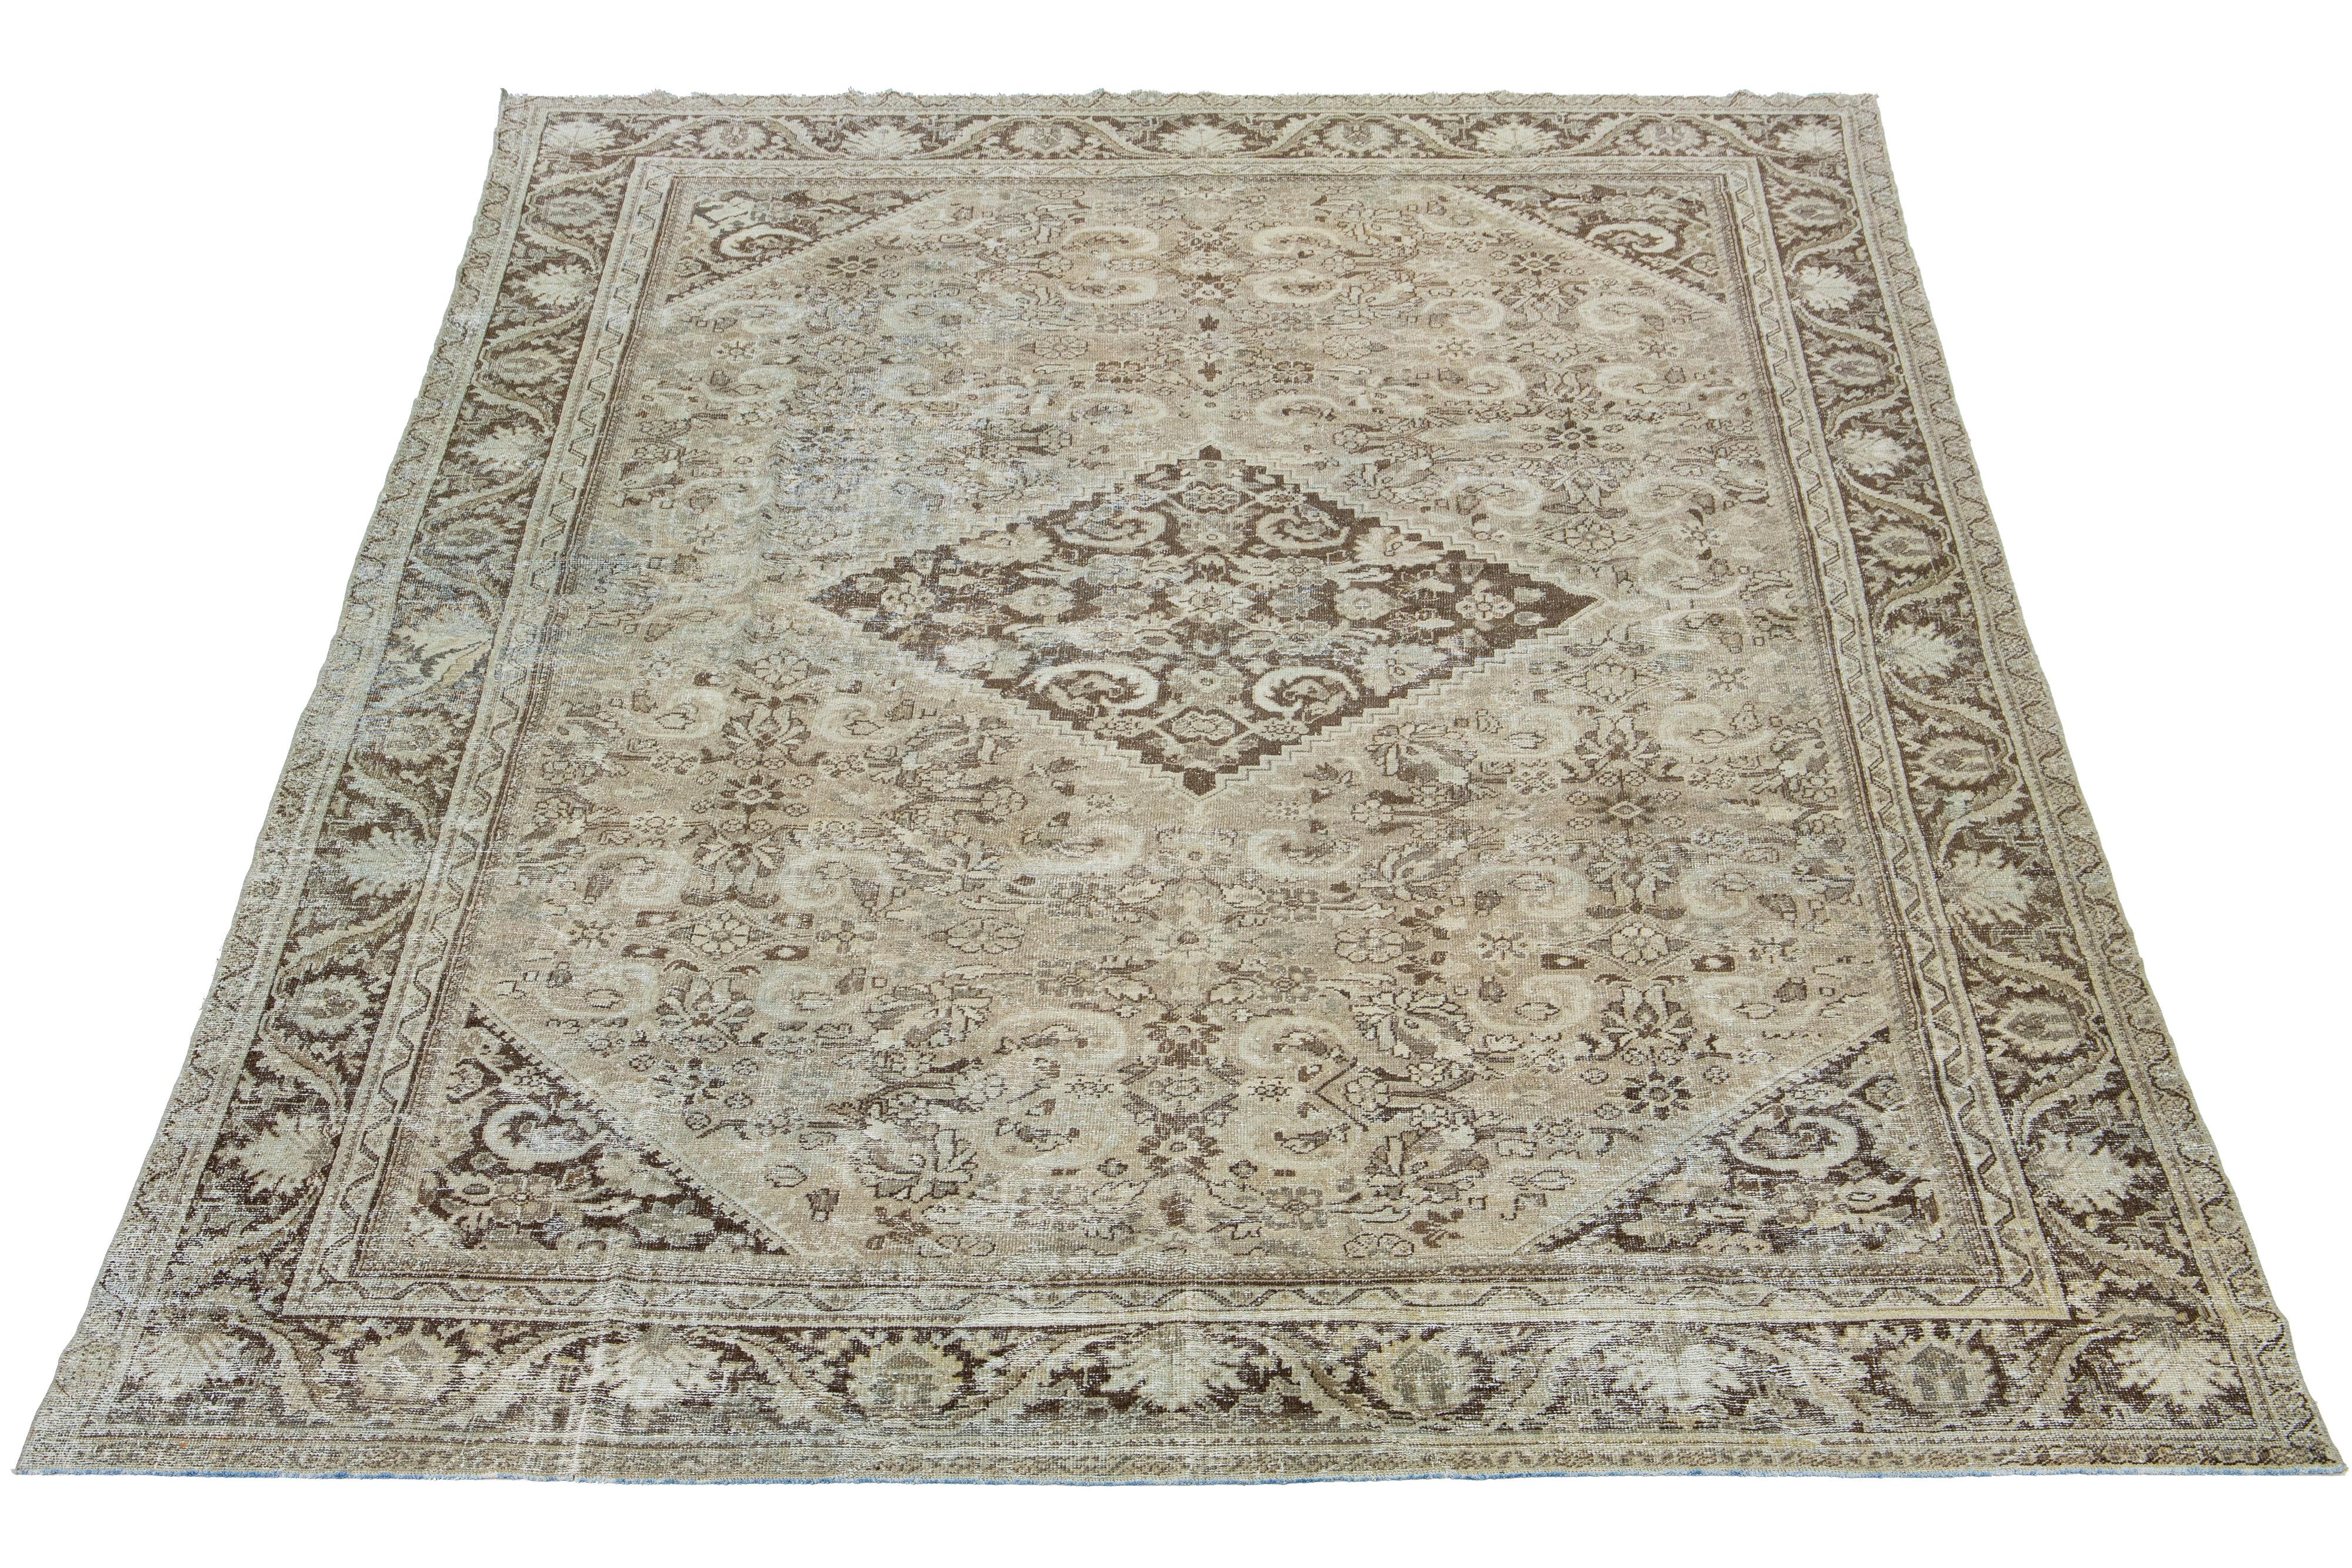 Magnifique tapis antique en laine nouée à la main Mahal Distressed avec un champ de couleur marron clair. Ce tapis persan présente des teintes bleues et beiges classiques sur l'ensemble du motif floral en médaillon.

Ce tapis mesure 10'3' X 14'8